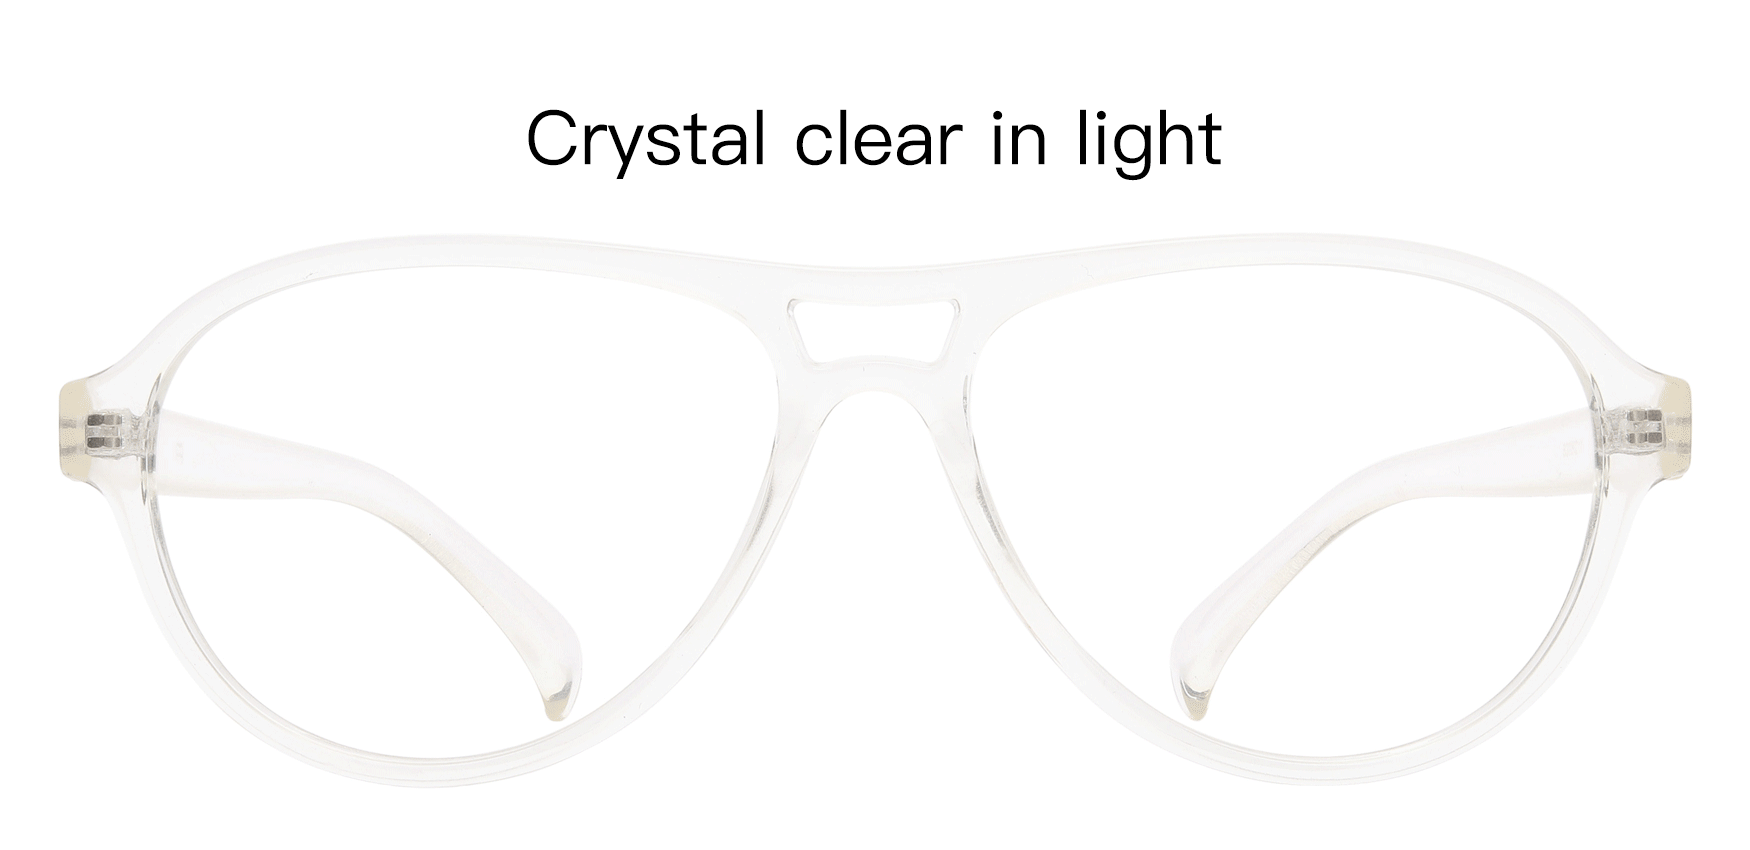 Cinema Aviator Prescription Glasses - Clear